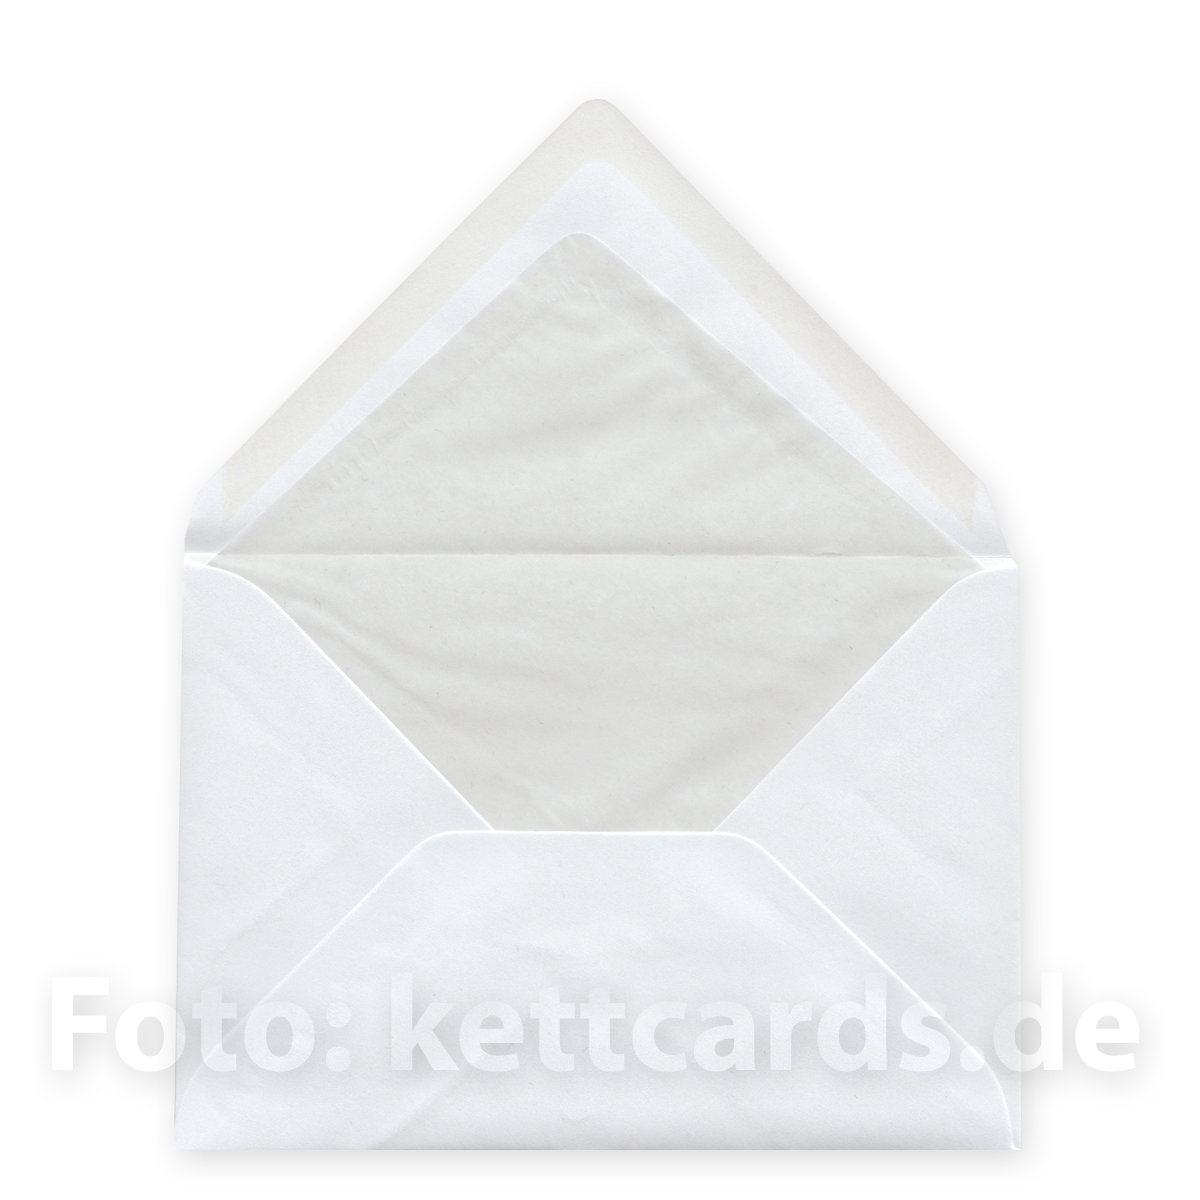 normale weiße C6 Kuverts mit hellgrauem Seidenfutter